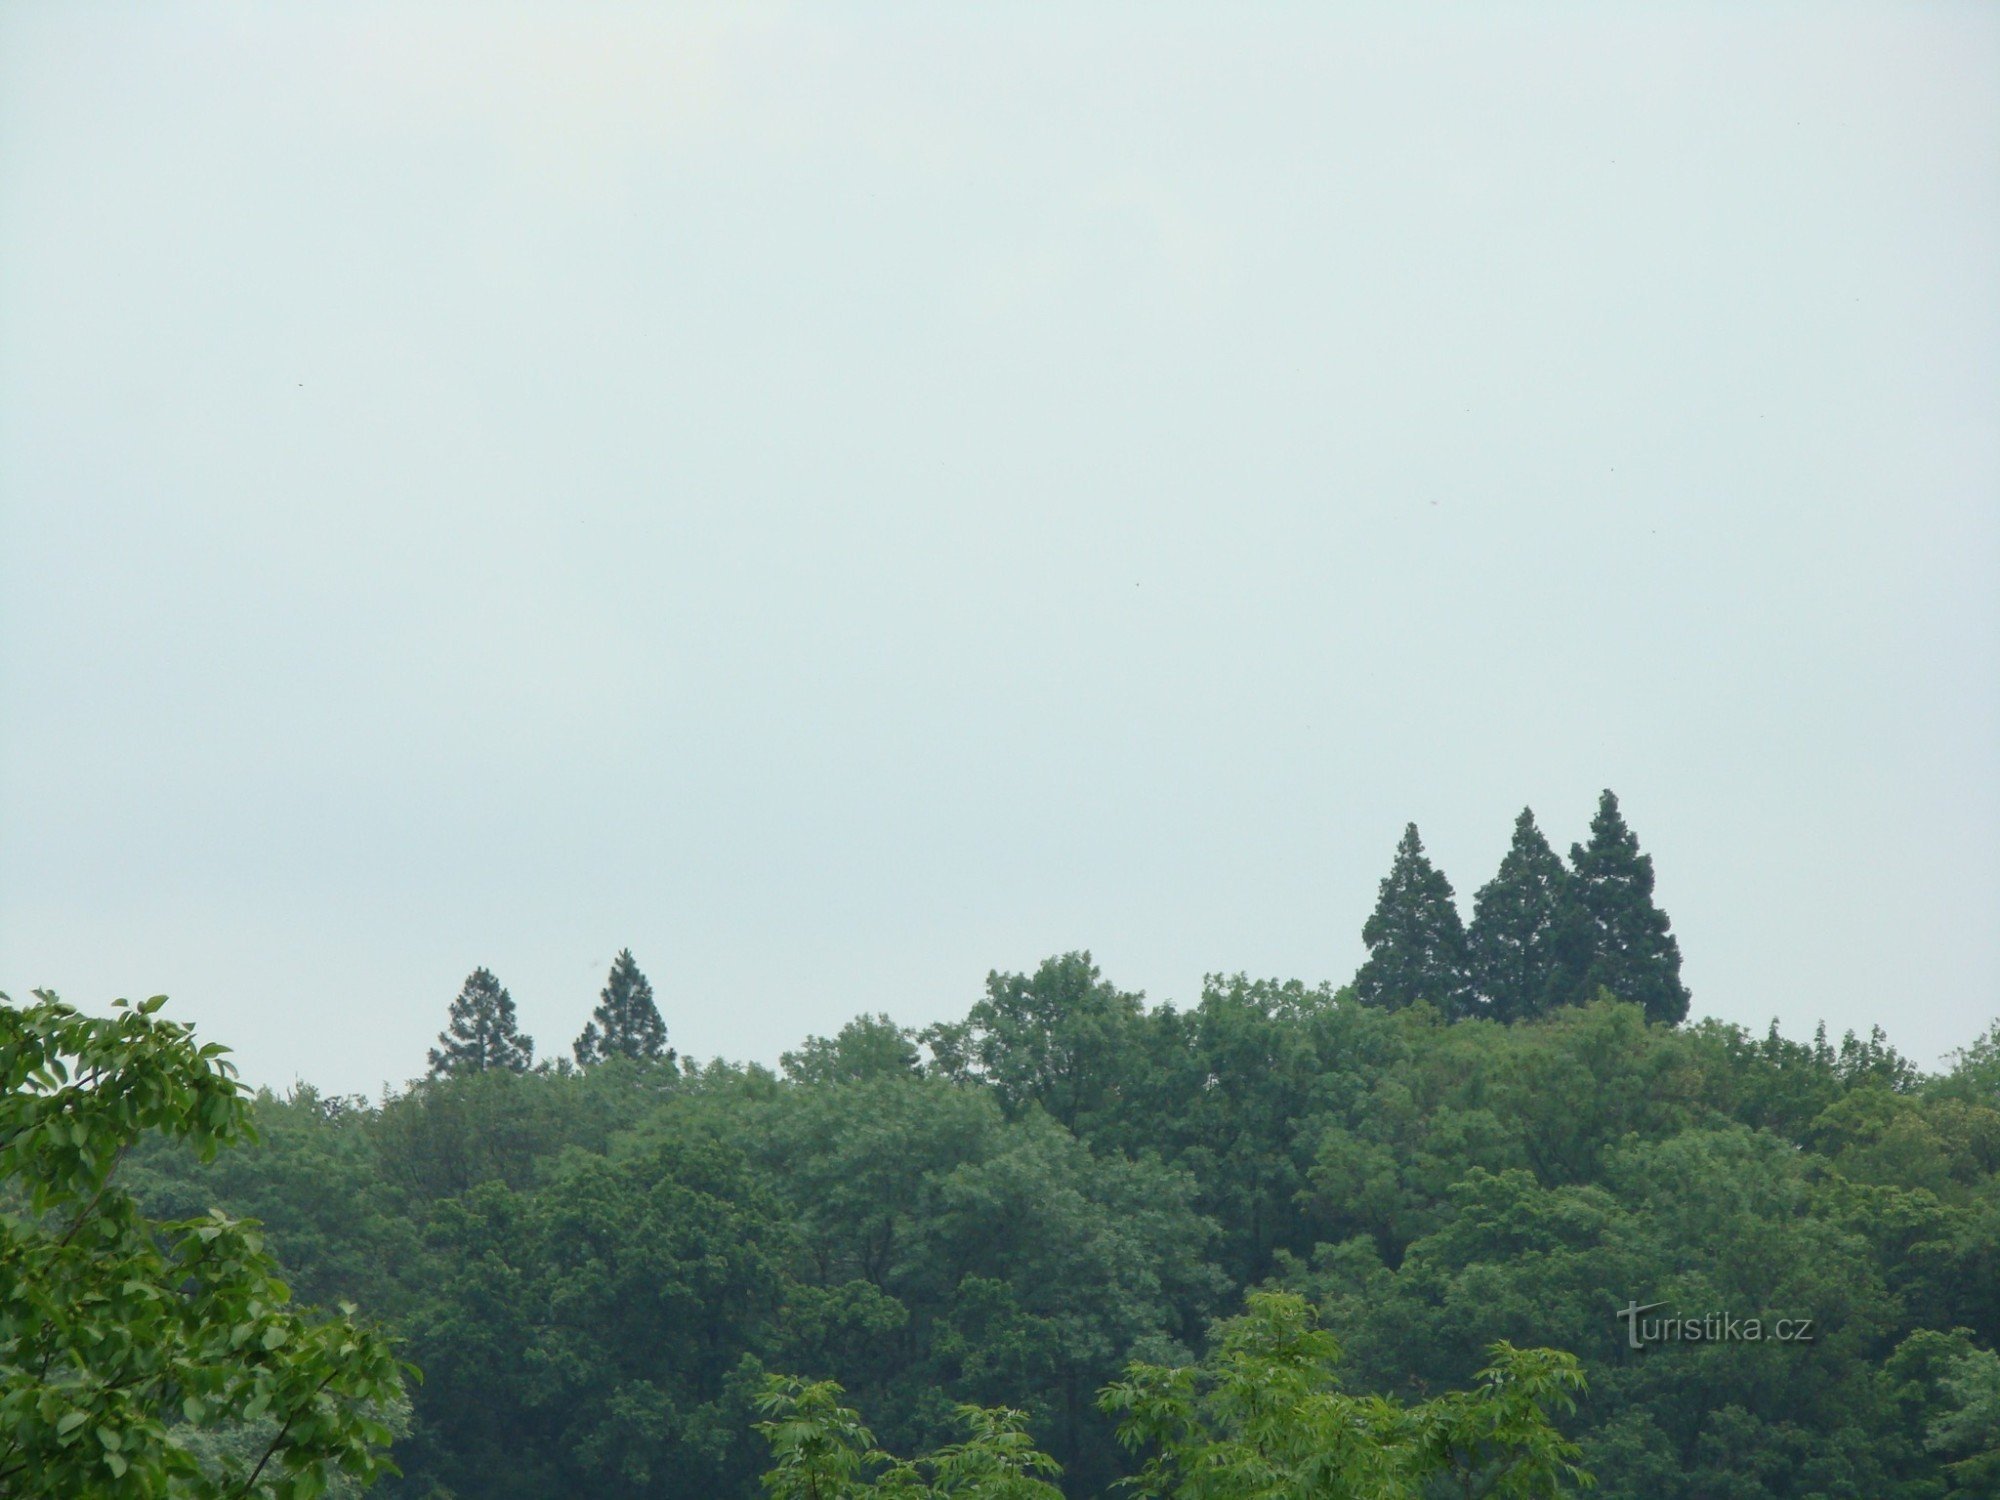 Gigantyczne sekwoje w Ratměřicach. Są znacznie wyższe niż inne drzewa w parku zamkowym.